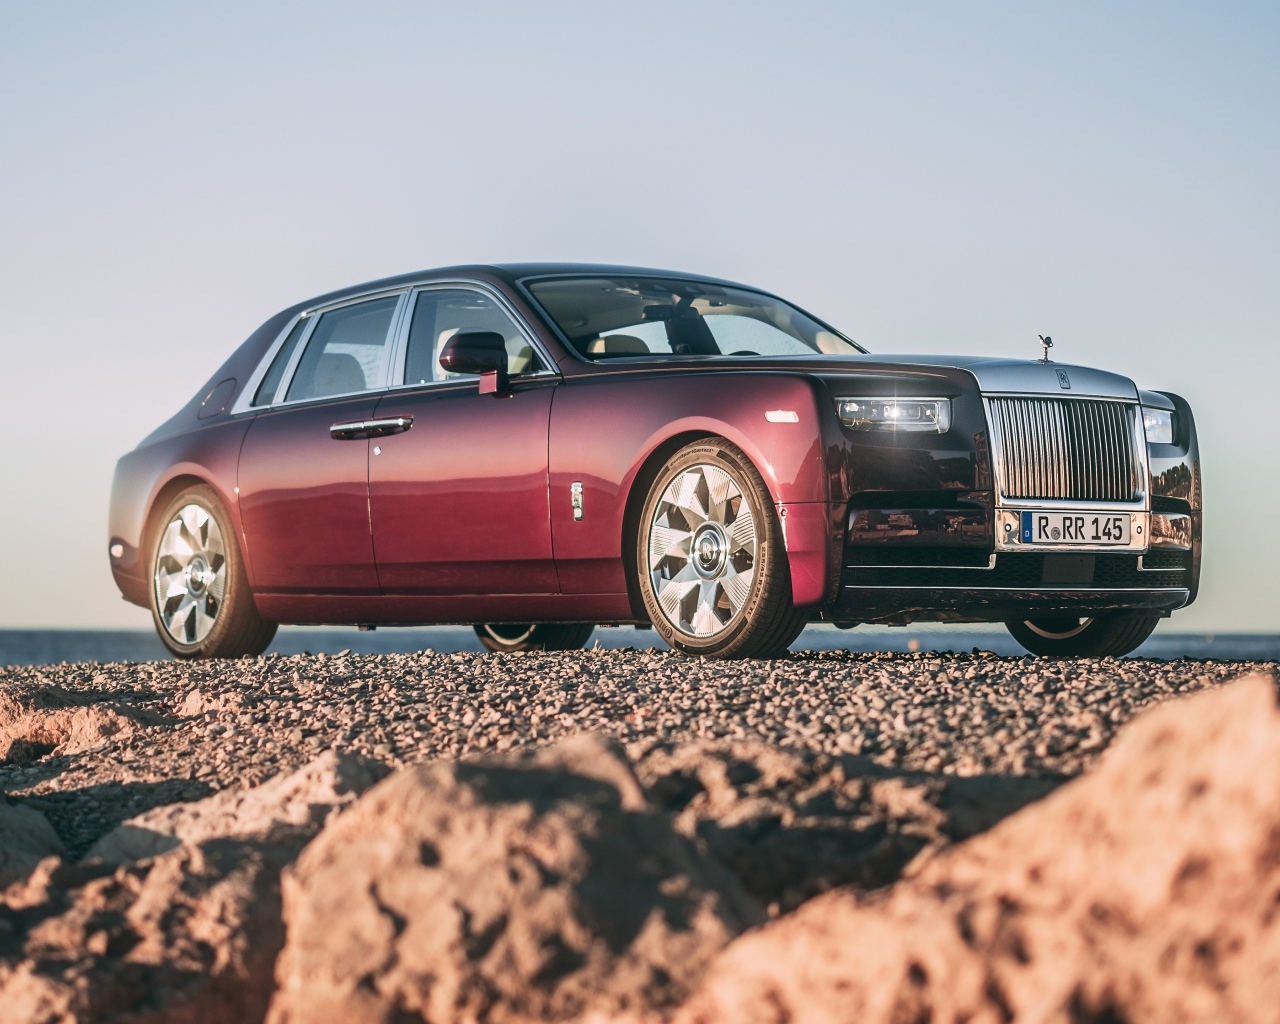 Автомобиль Rolls-Royce Phantom на песке